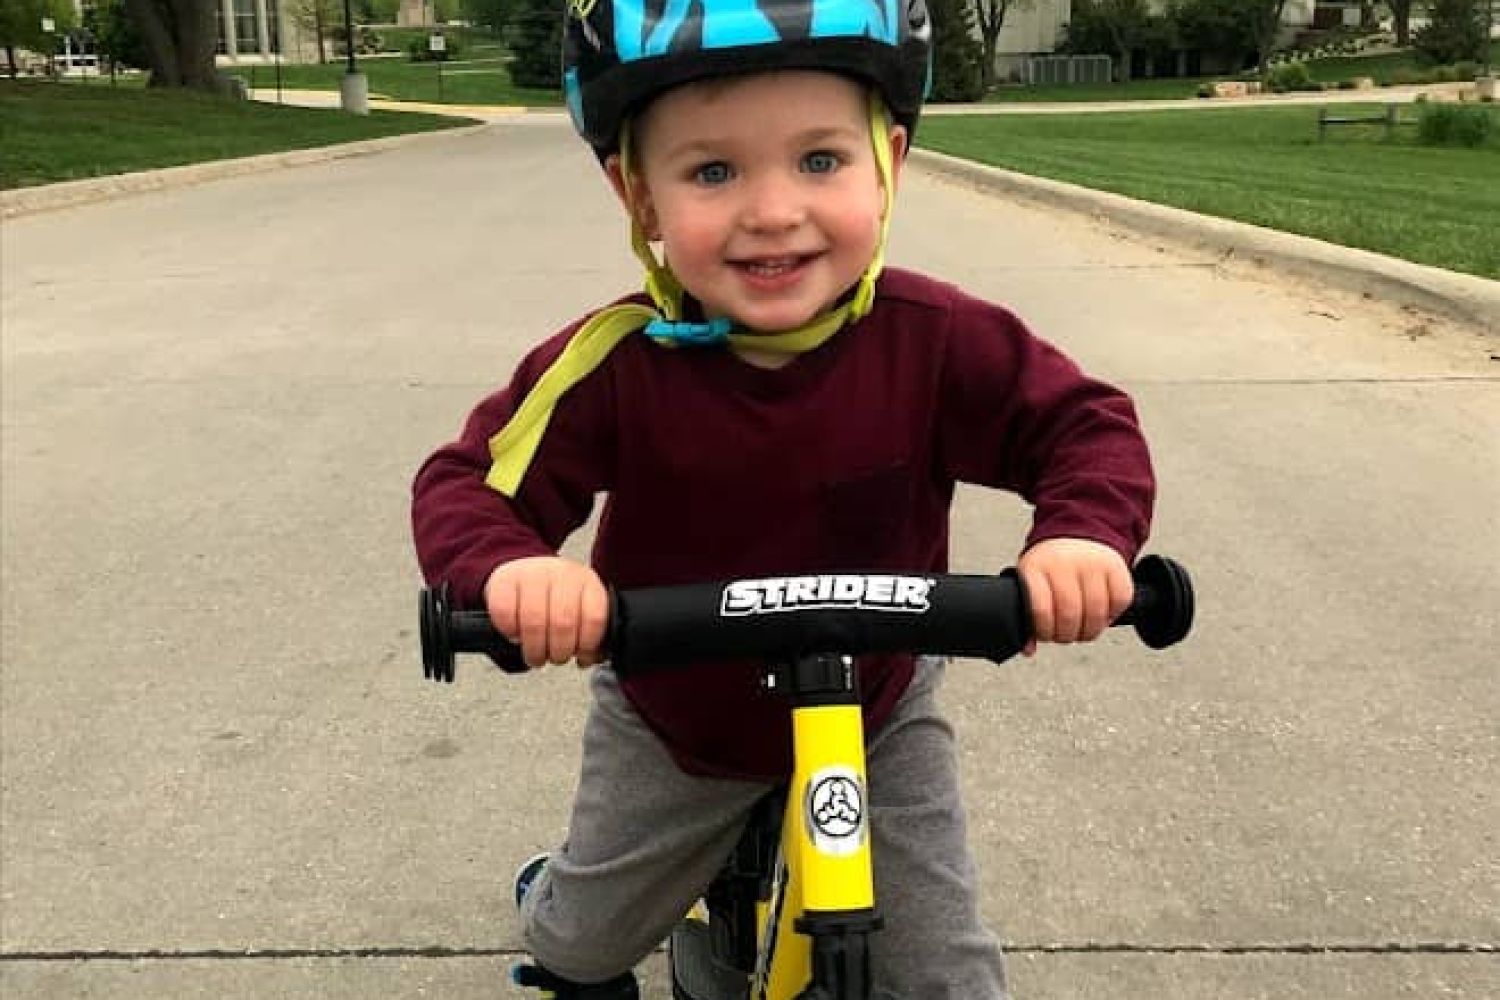 Owen Tudor, a young boy, rides his yellow Strider bike